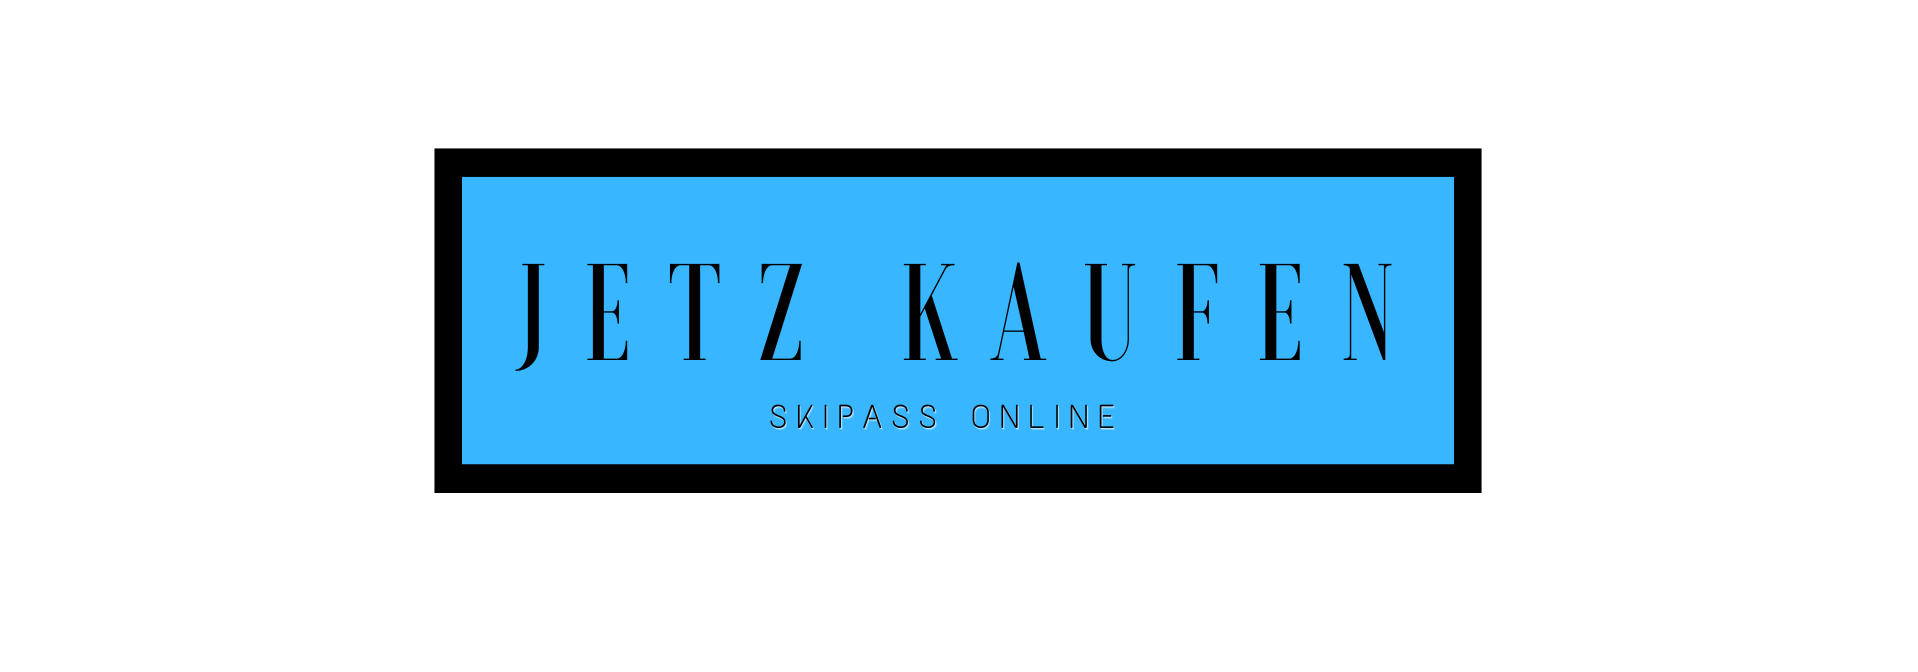 Domaine Nordique La Bresse Lispach jetzt kaufen Skipass Online